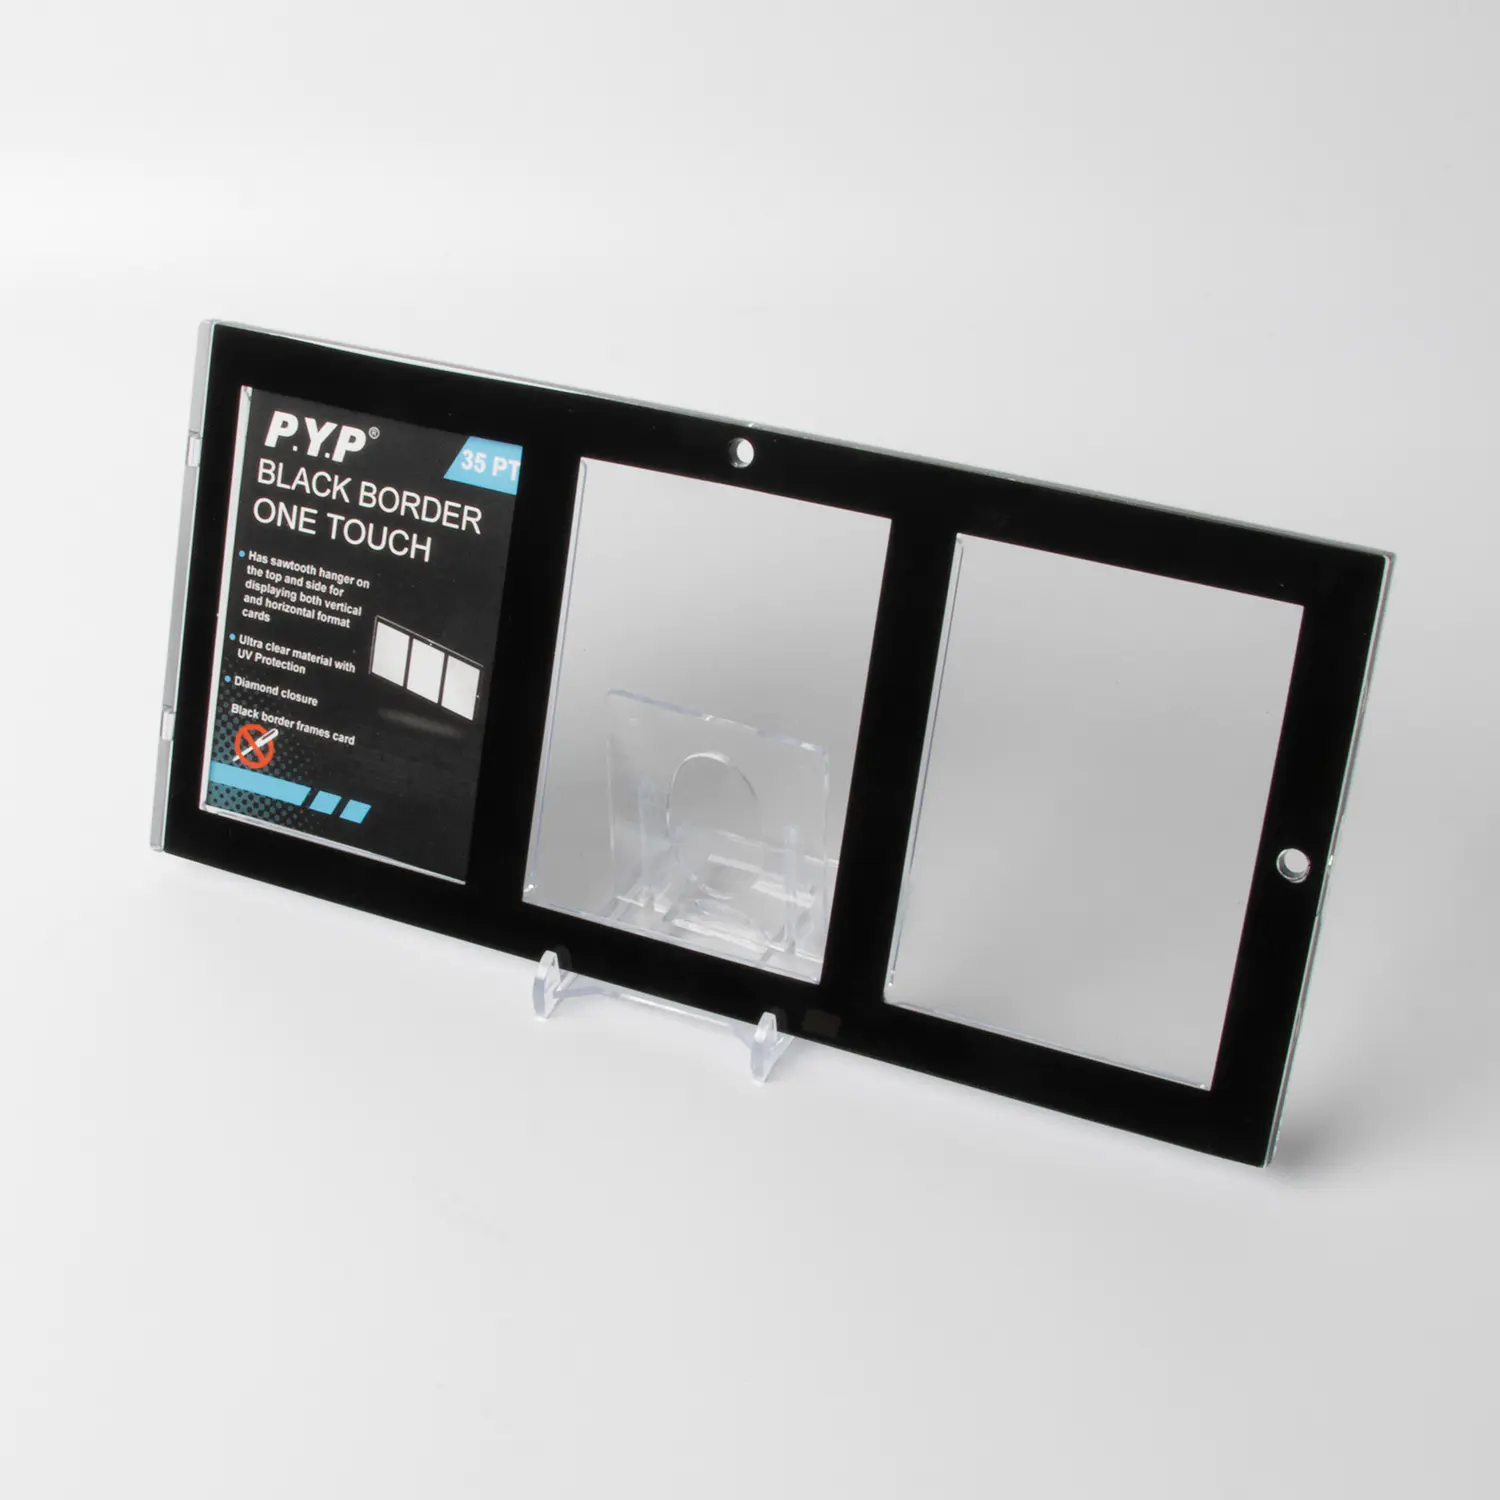 35PT 3-Karten-Magnetkartenhalter mit schwarzem Rand UV-Schutz